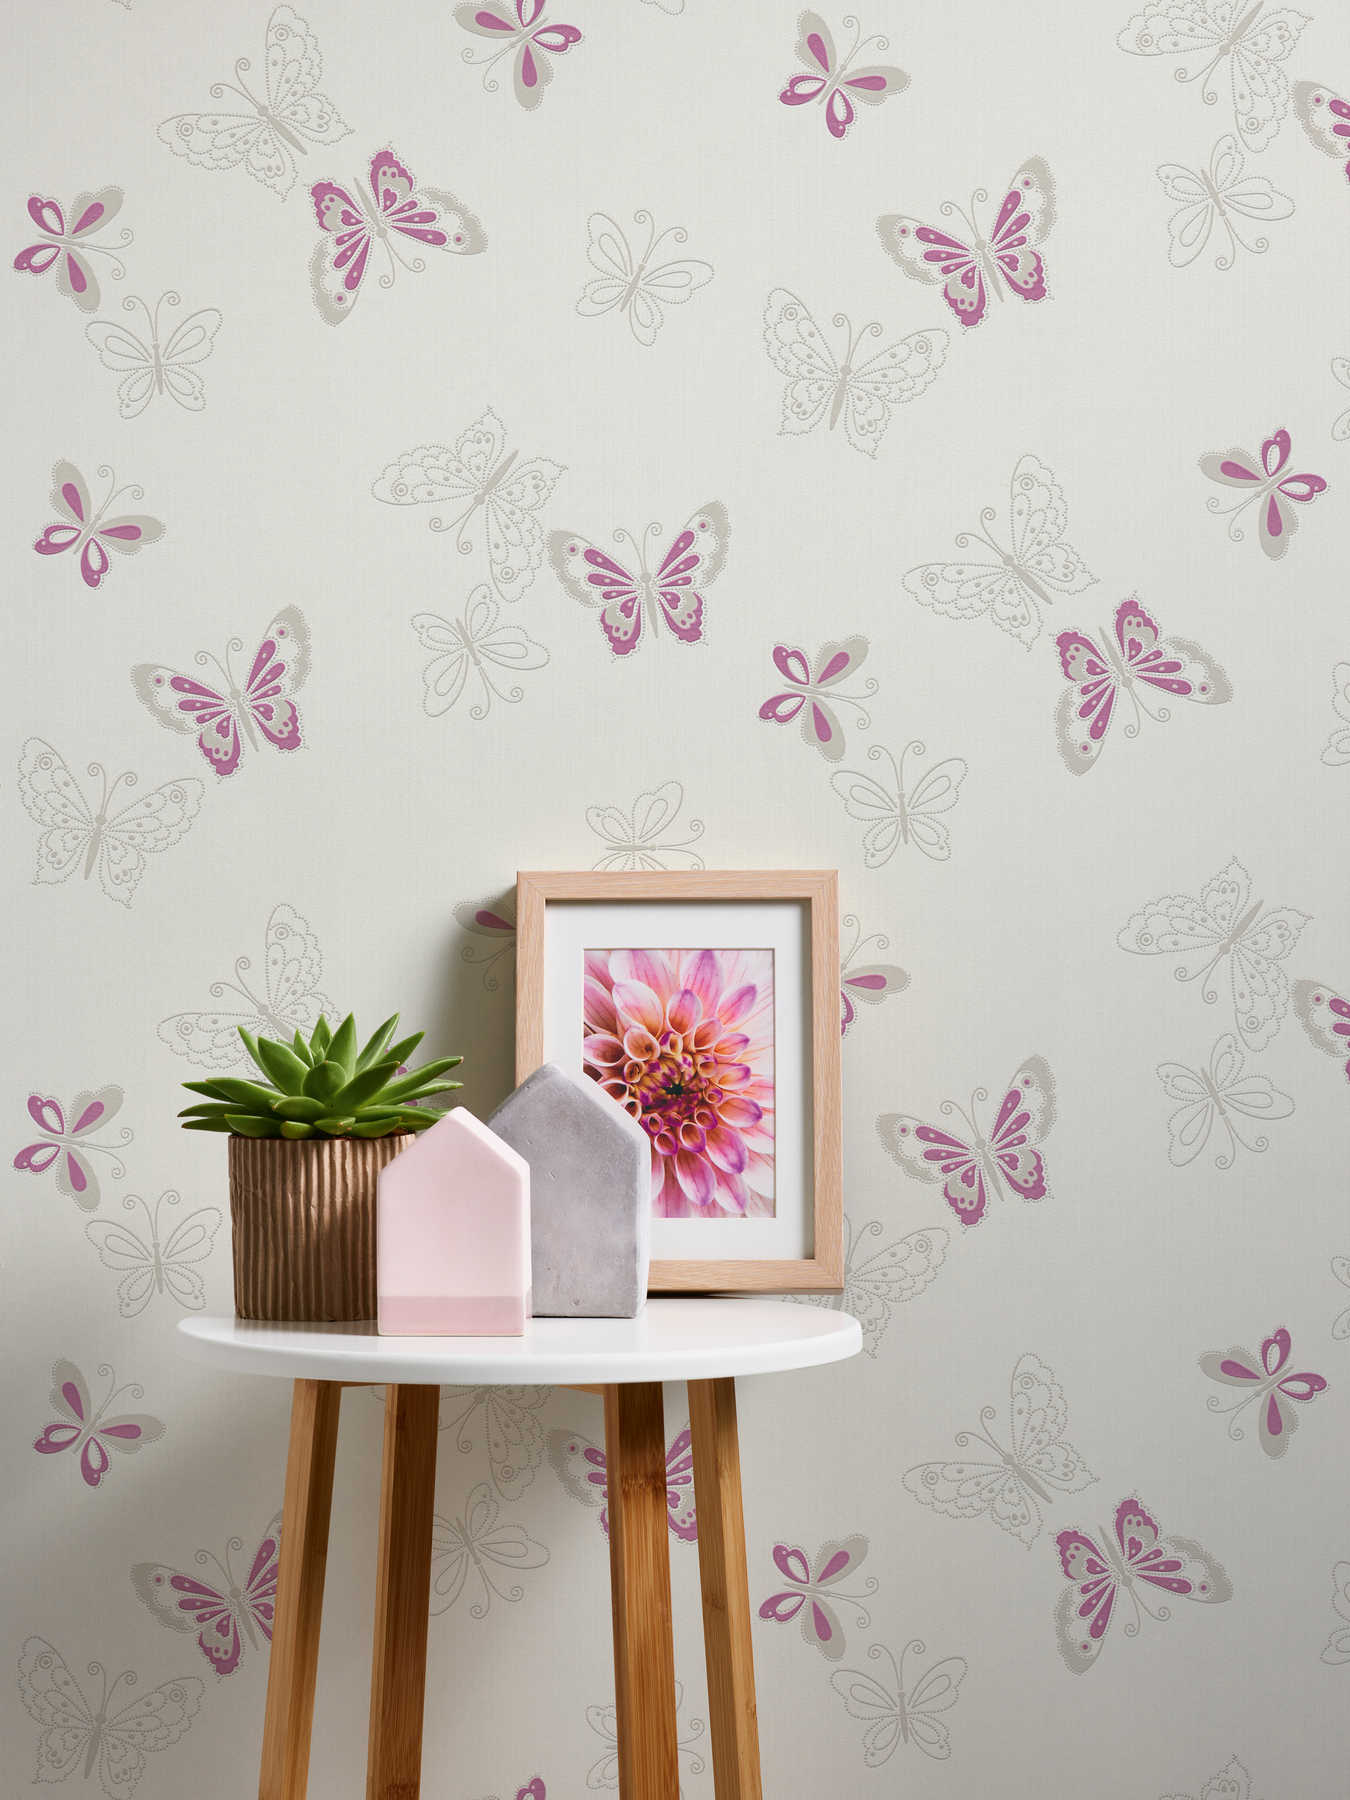             Kinderzimmer Tapete mit Schmetterling – Beige, Violett
        